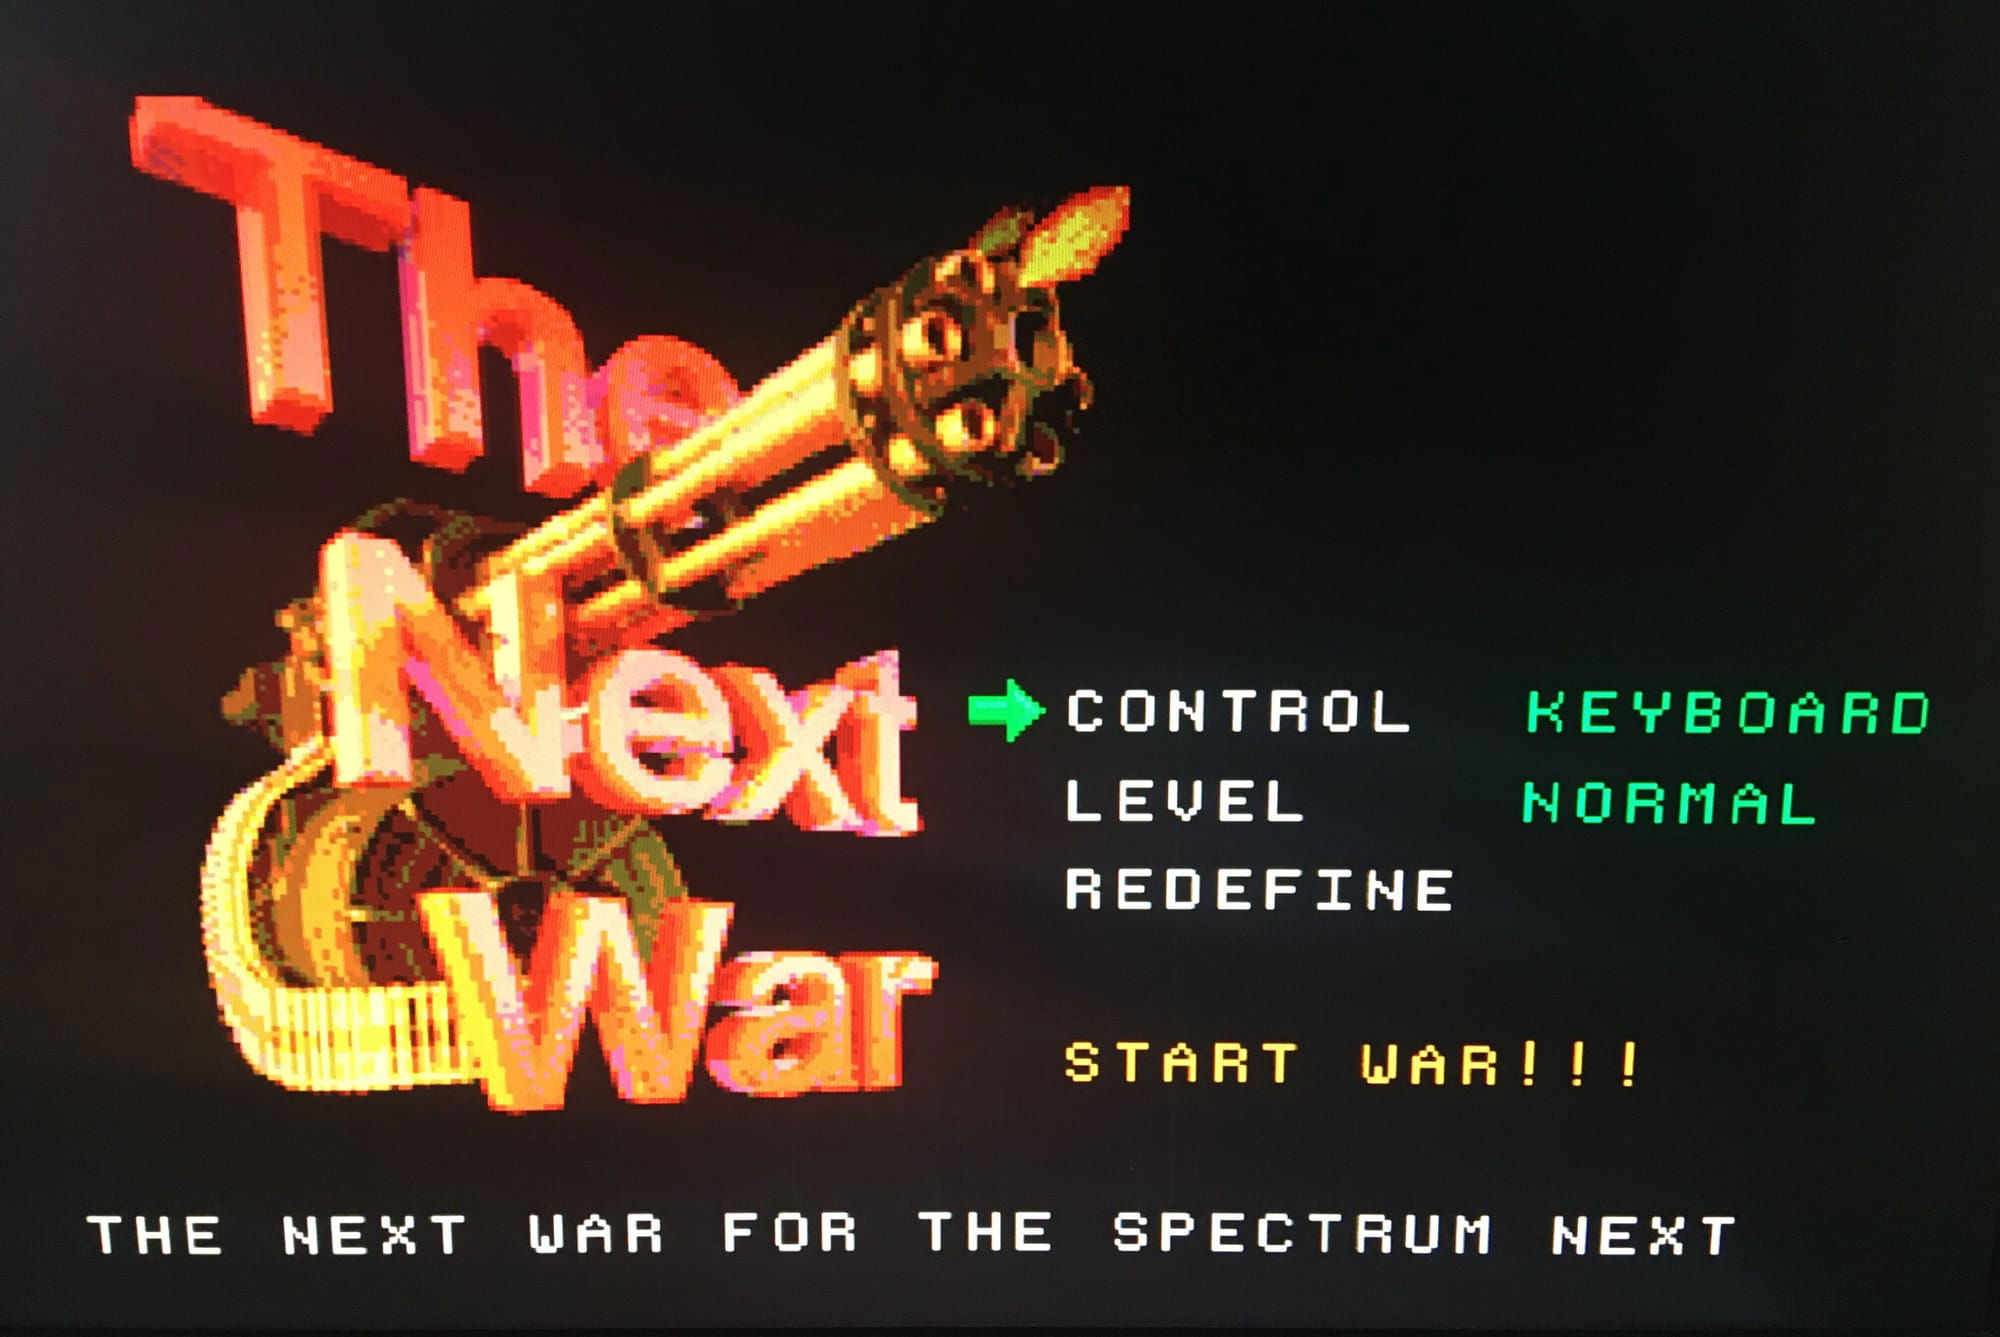 The Next War